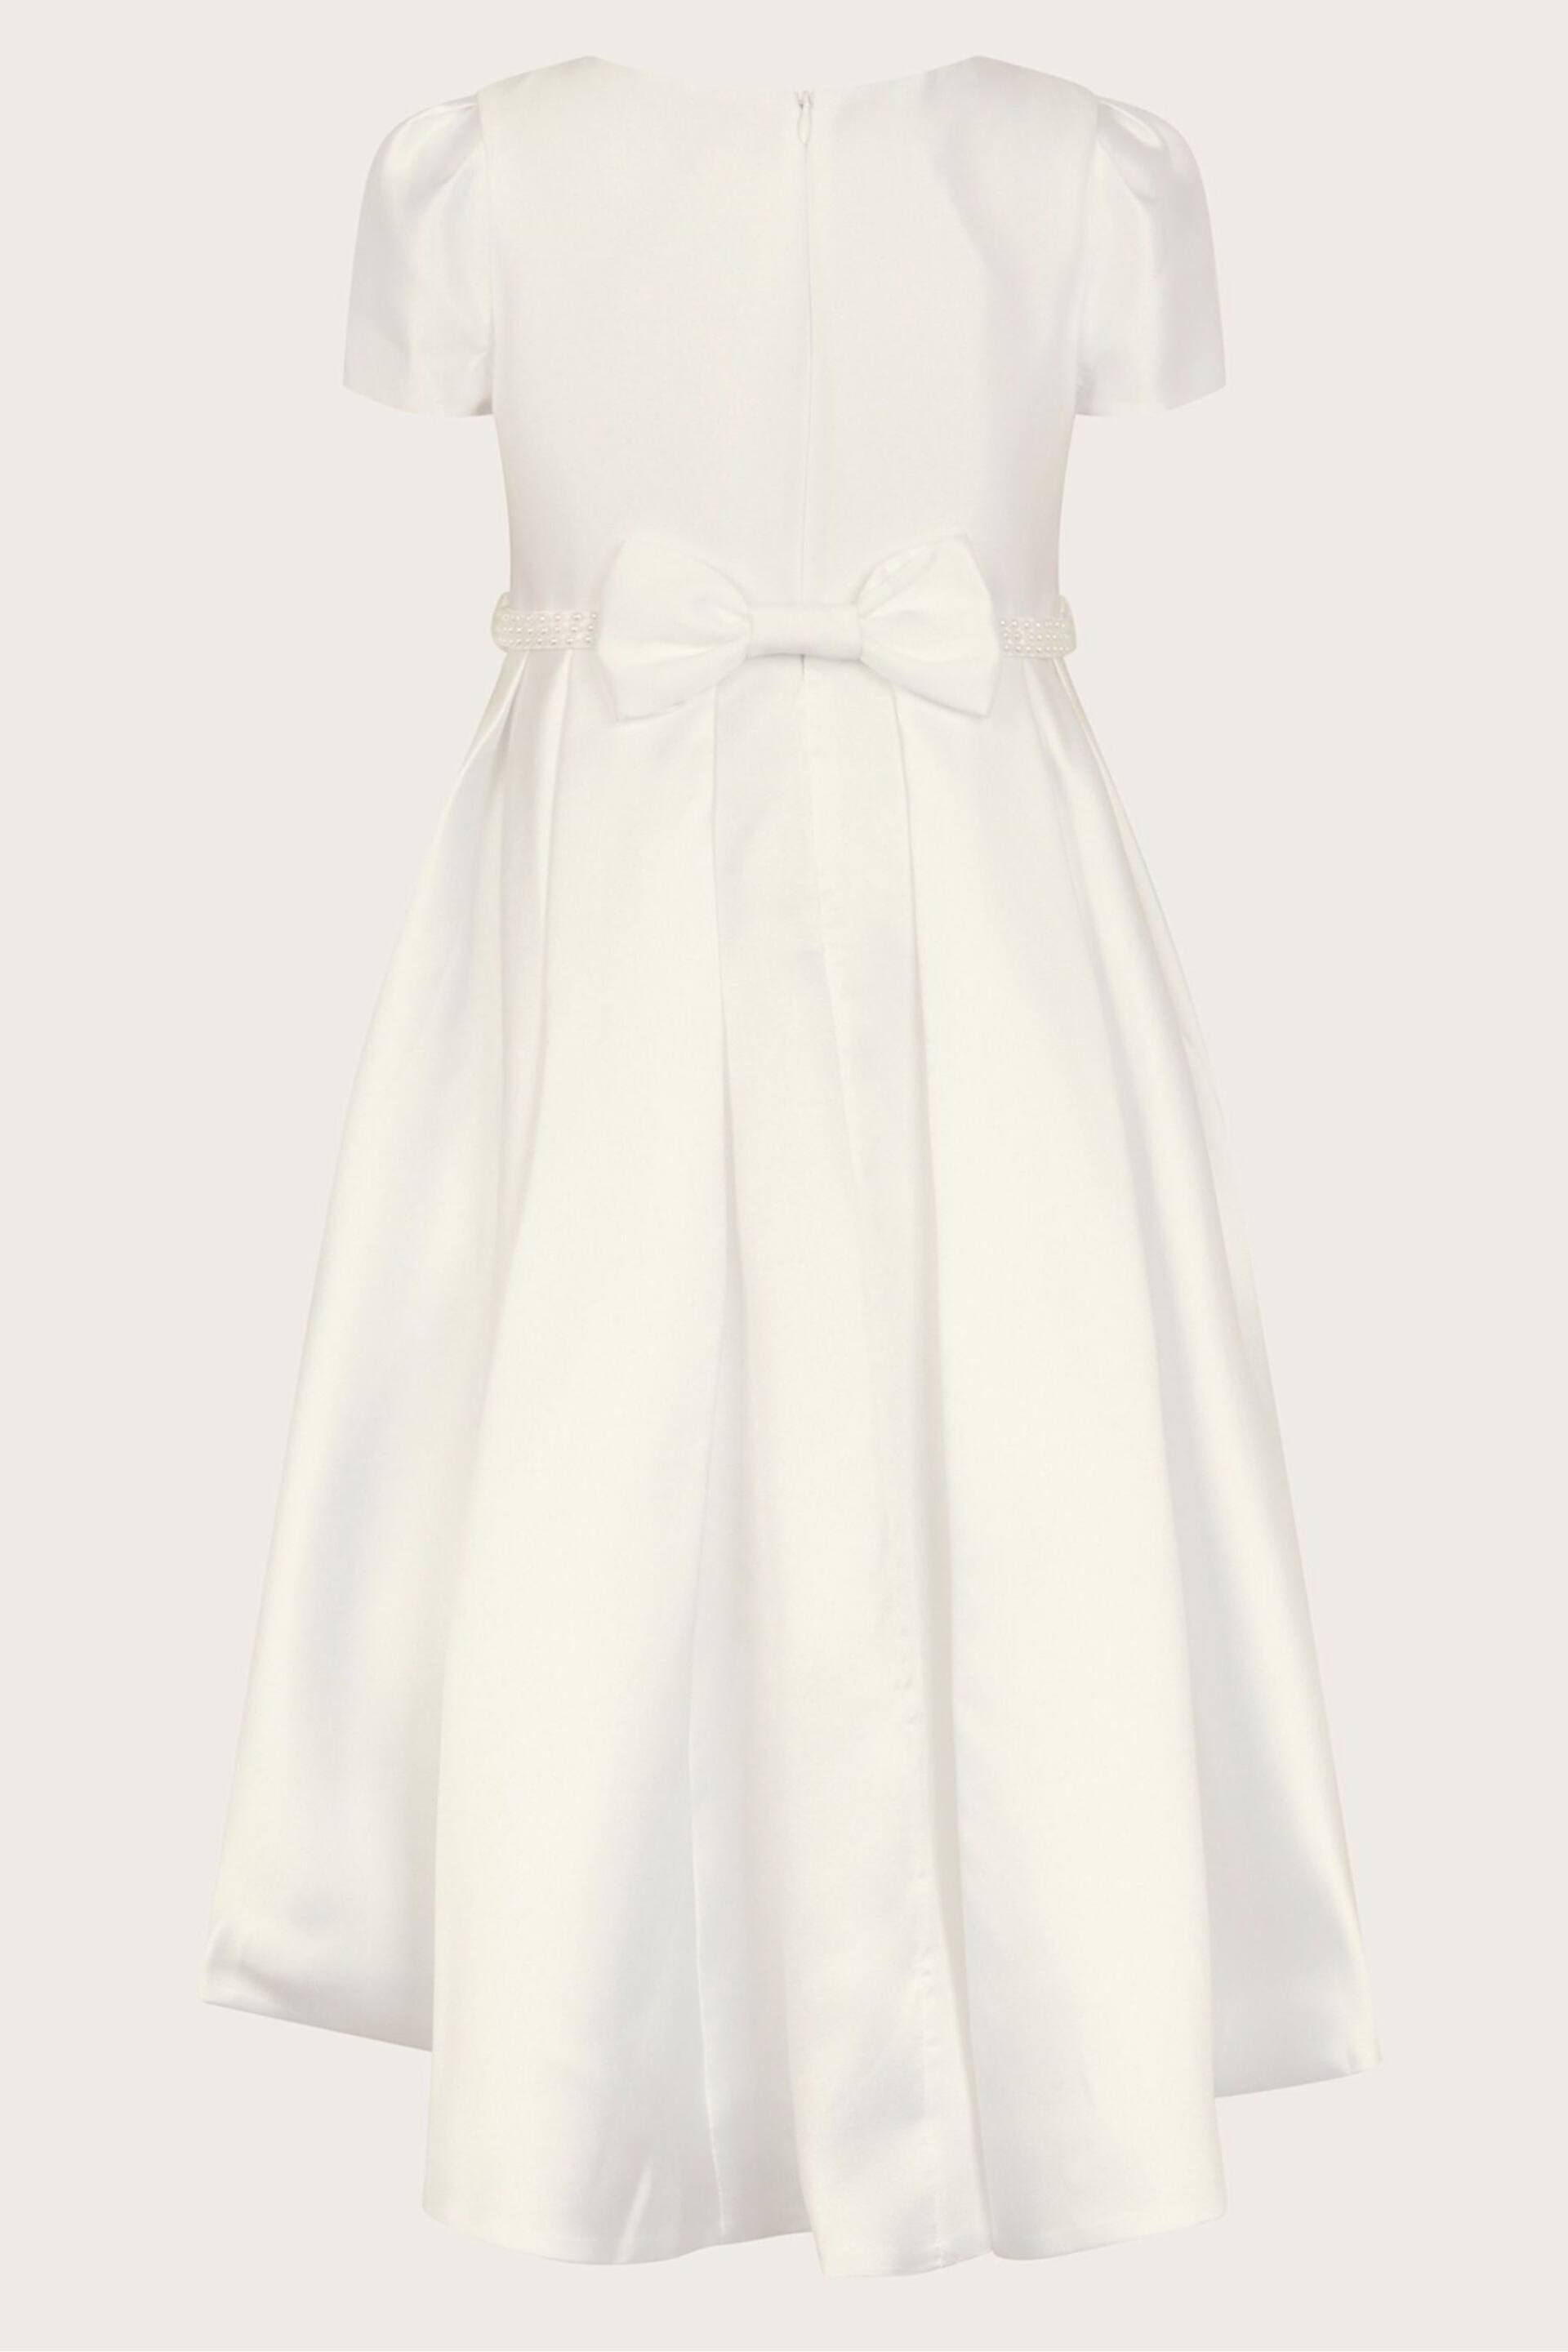 Monsoon White Pearl Belt Henrietta Flower Girl Dress - Image 2 of 3